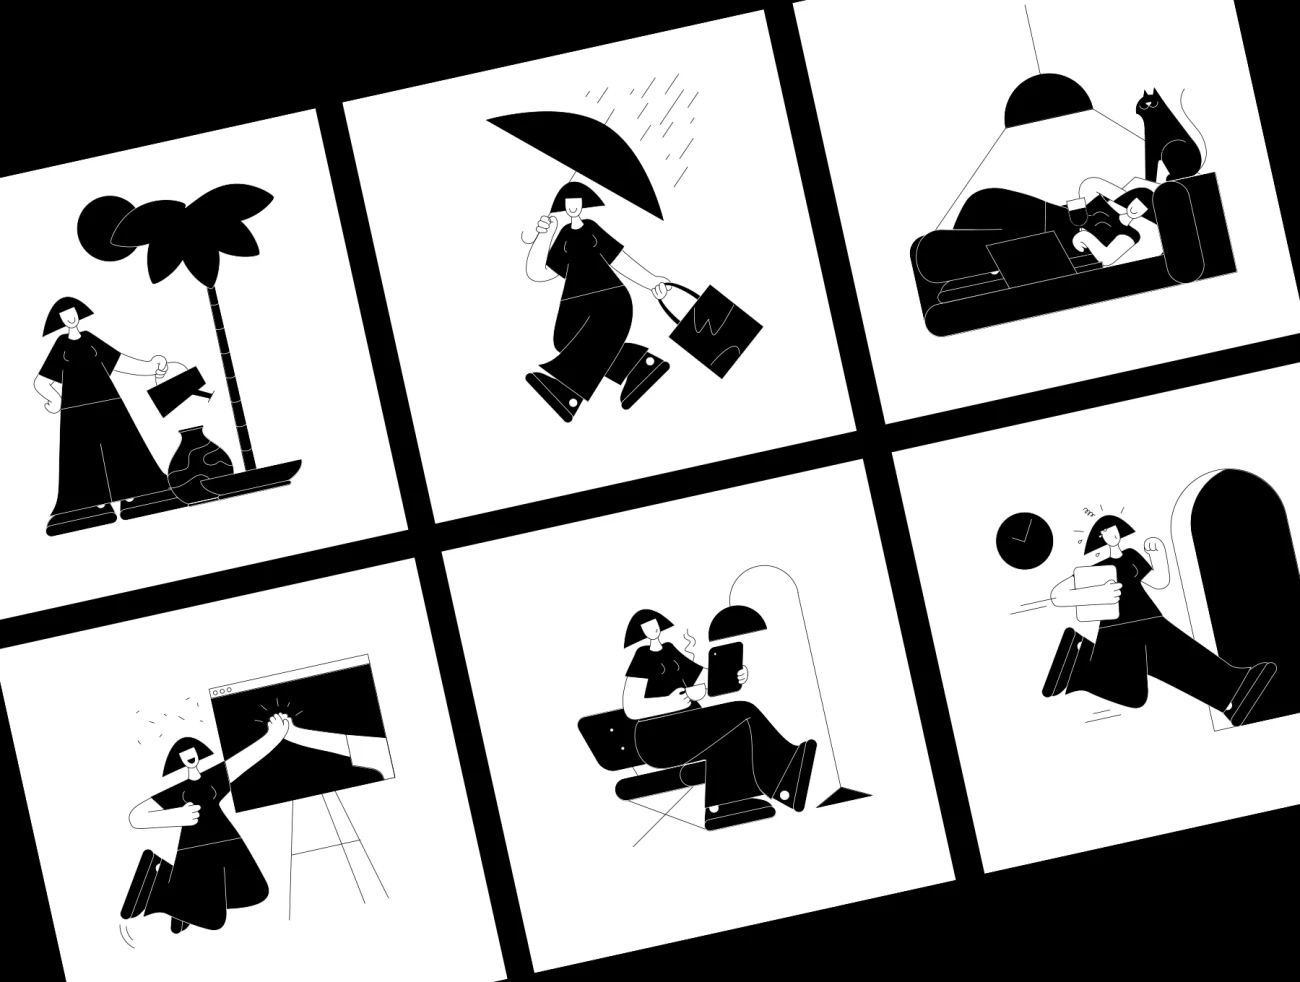 Lubo 25款高质量矢量实心抽象人物阅读社交休息淋雨骑车爬山遛鸟新邮件插图合集-人物插画、场景插画、学习生活、插画、插画风格、概念创意、社交购物、线条手绘、趣味漫画-到位啦UI